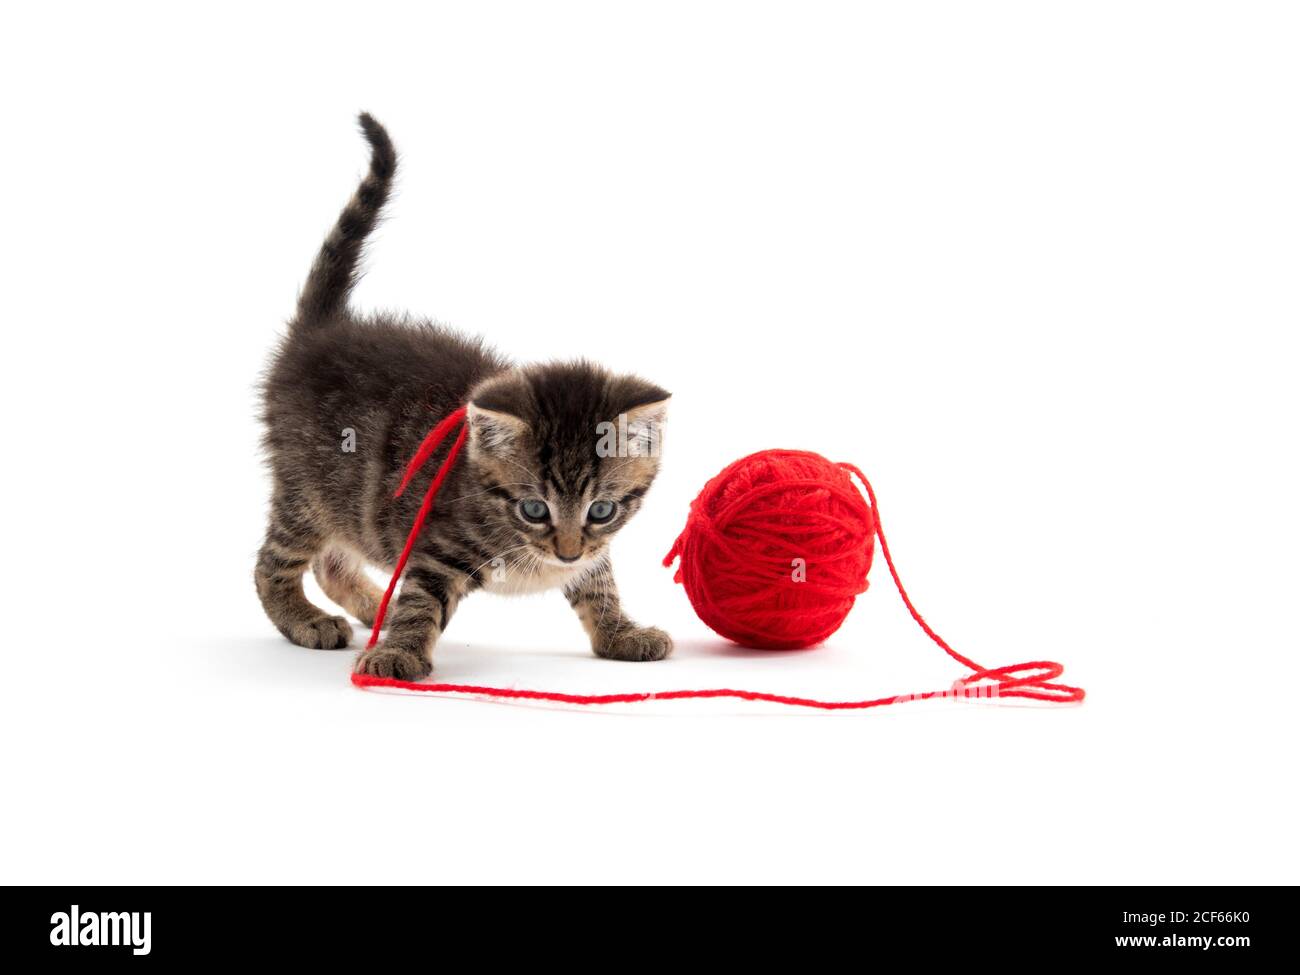 Simpatico cucciolo tabby che gioca con una palla di rosso filo isolato su fondo bianco Foto Stock